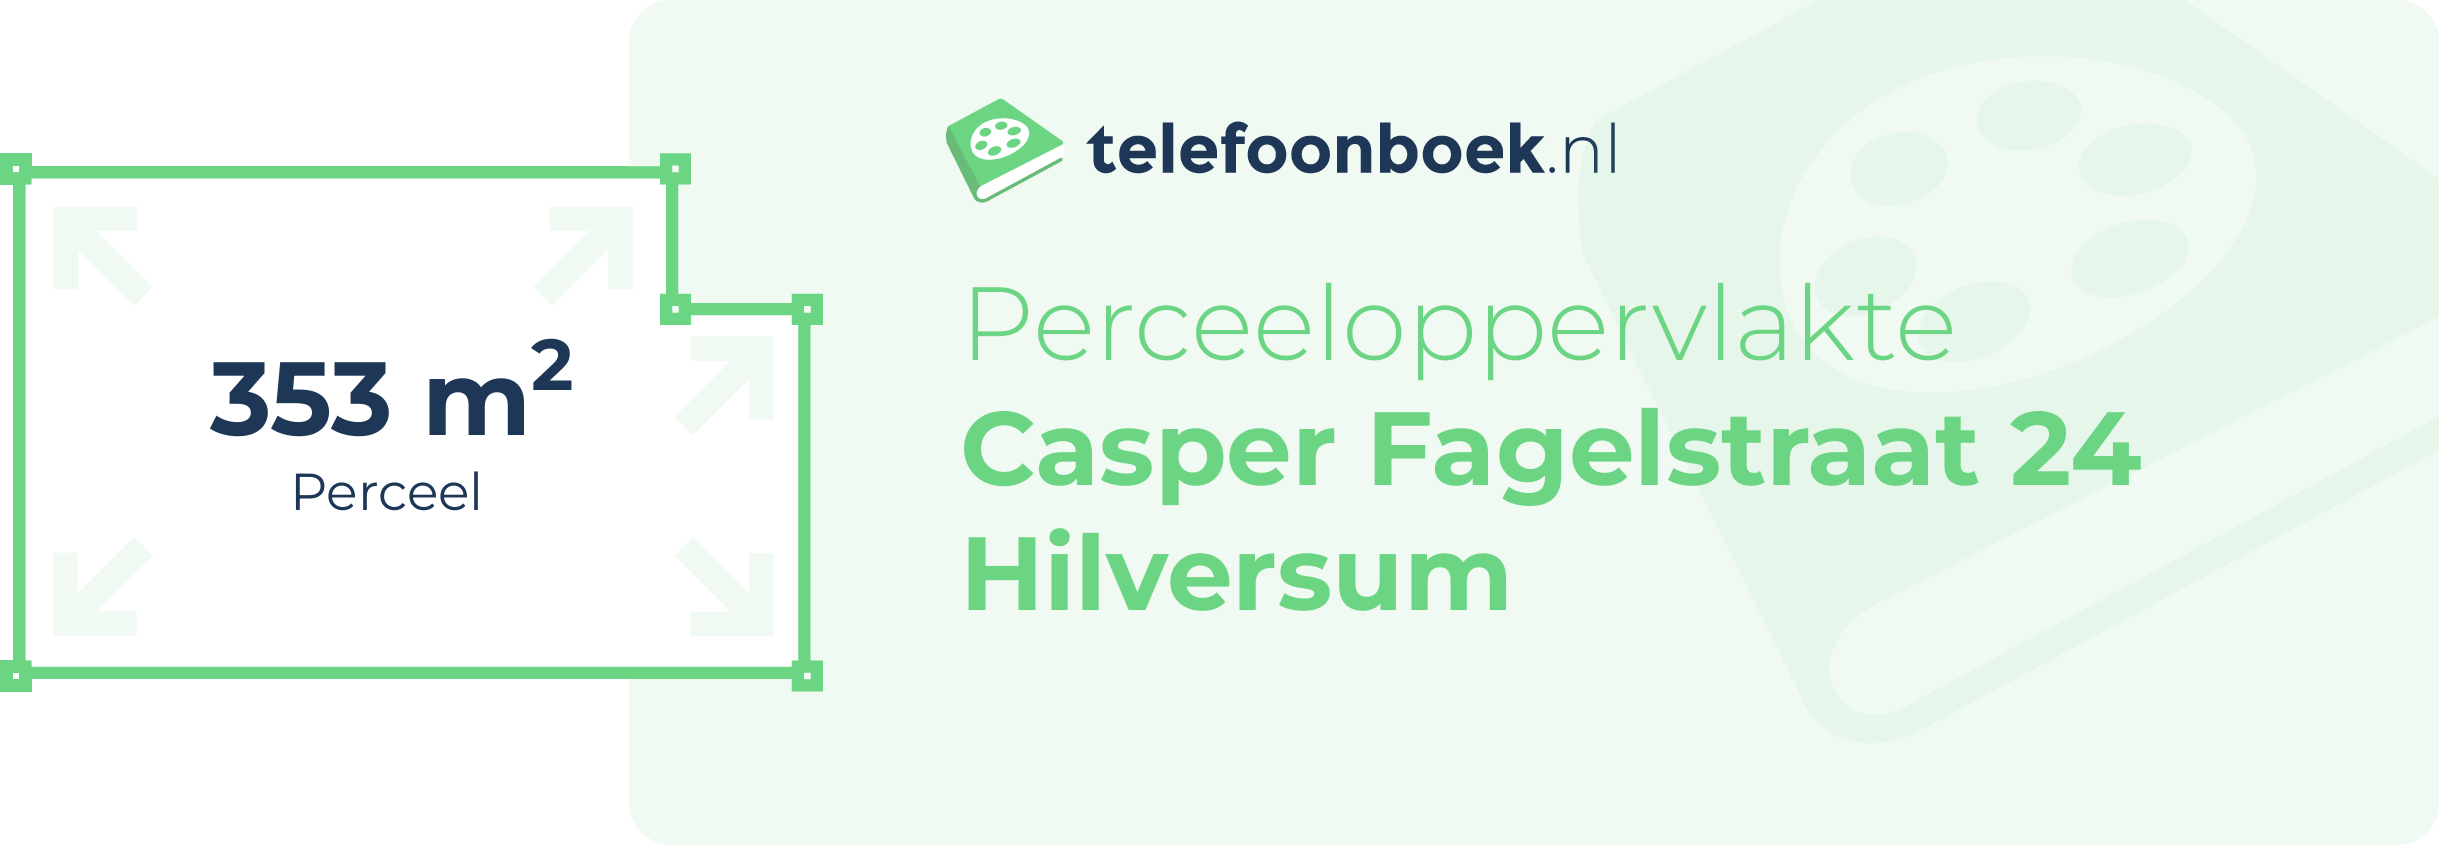 Perceeloppervlakte Casper Fagelstraat 24 Hilversum